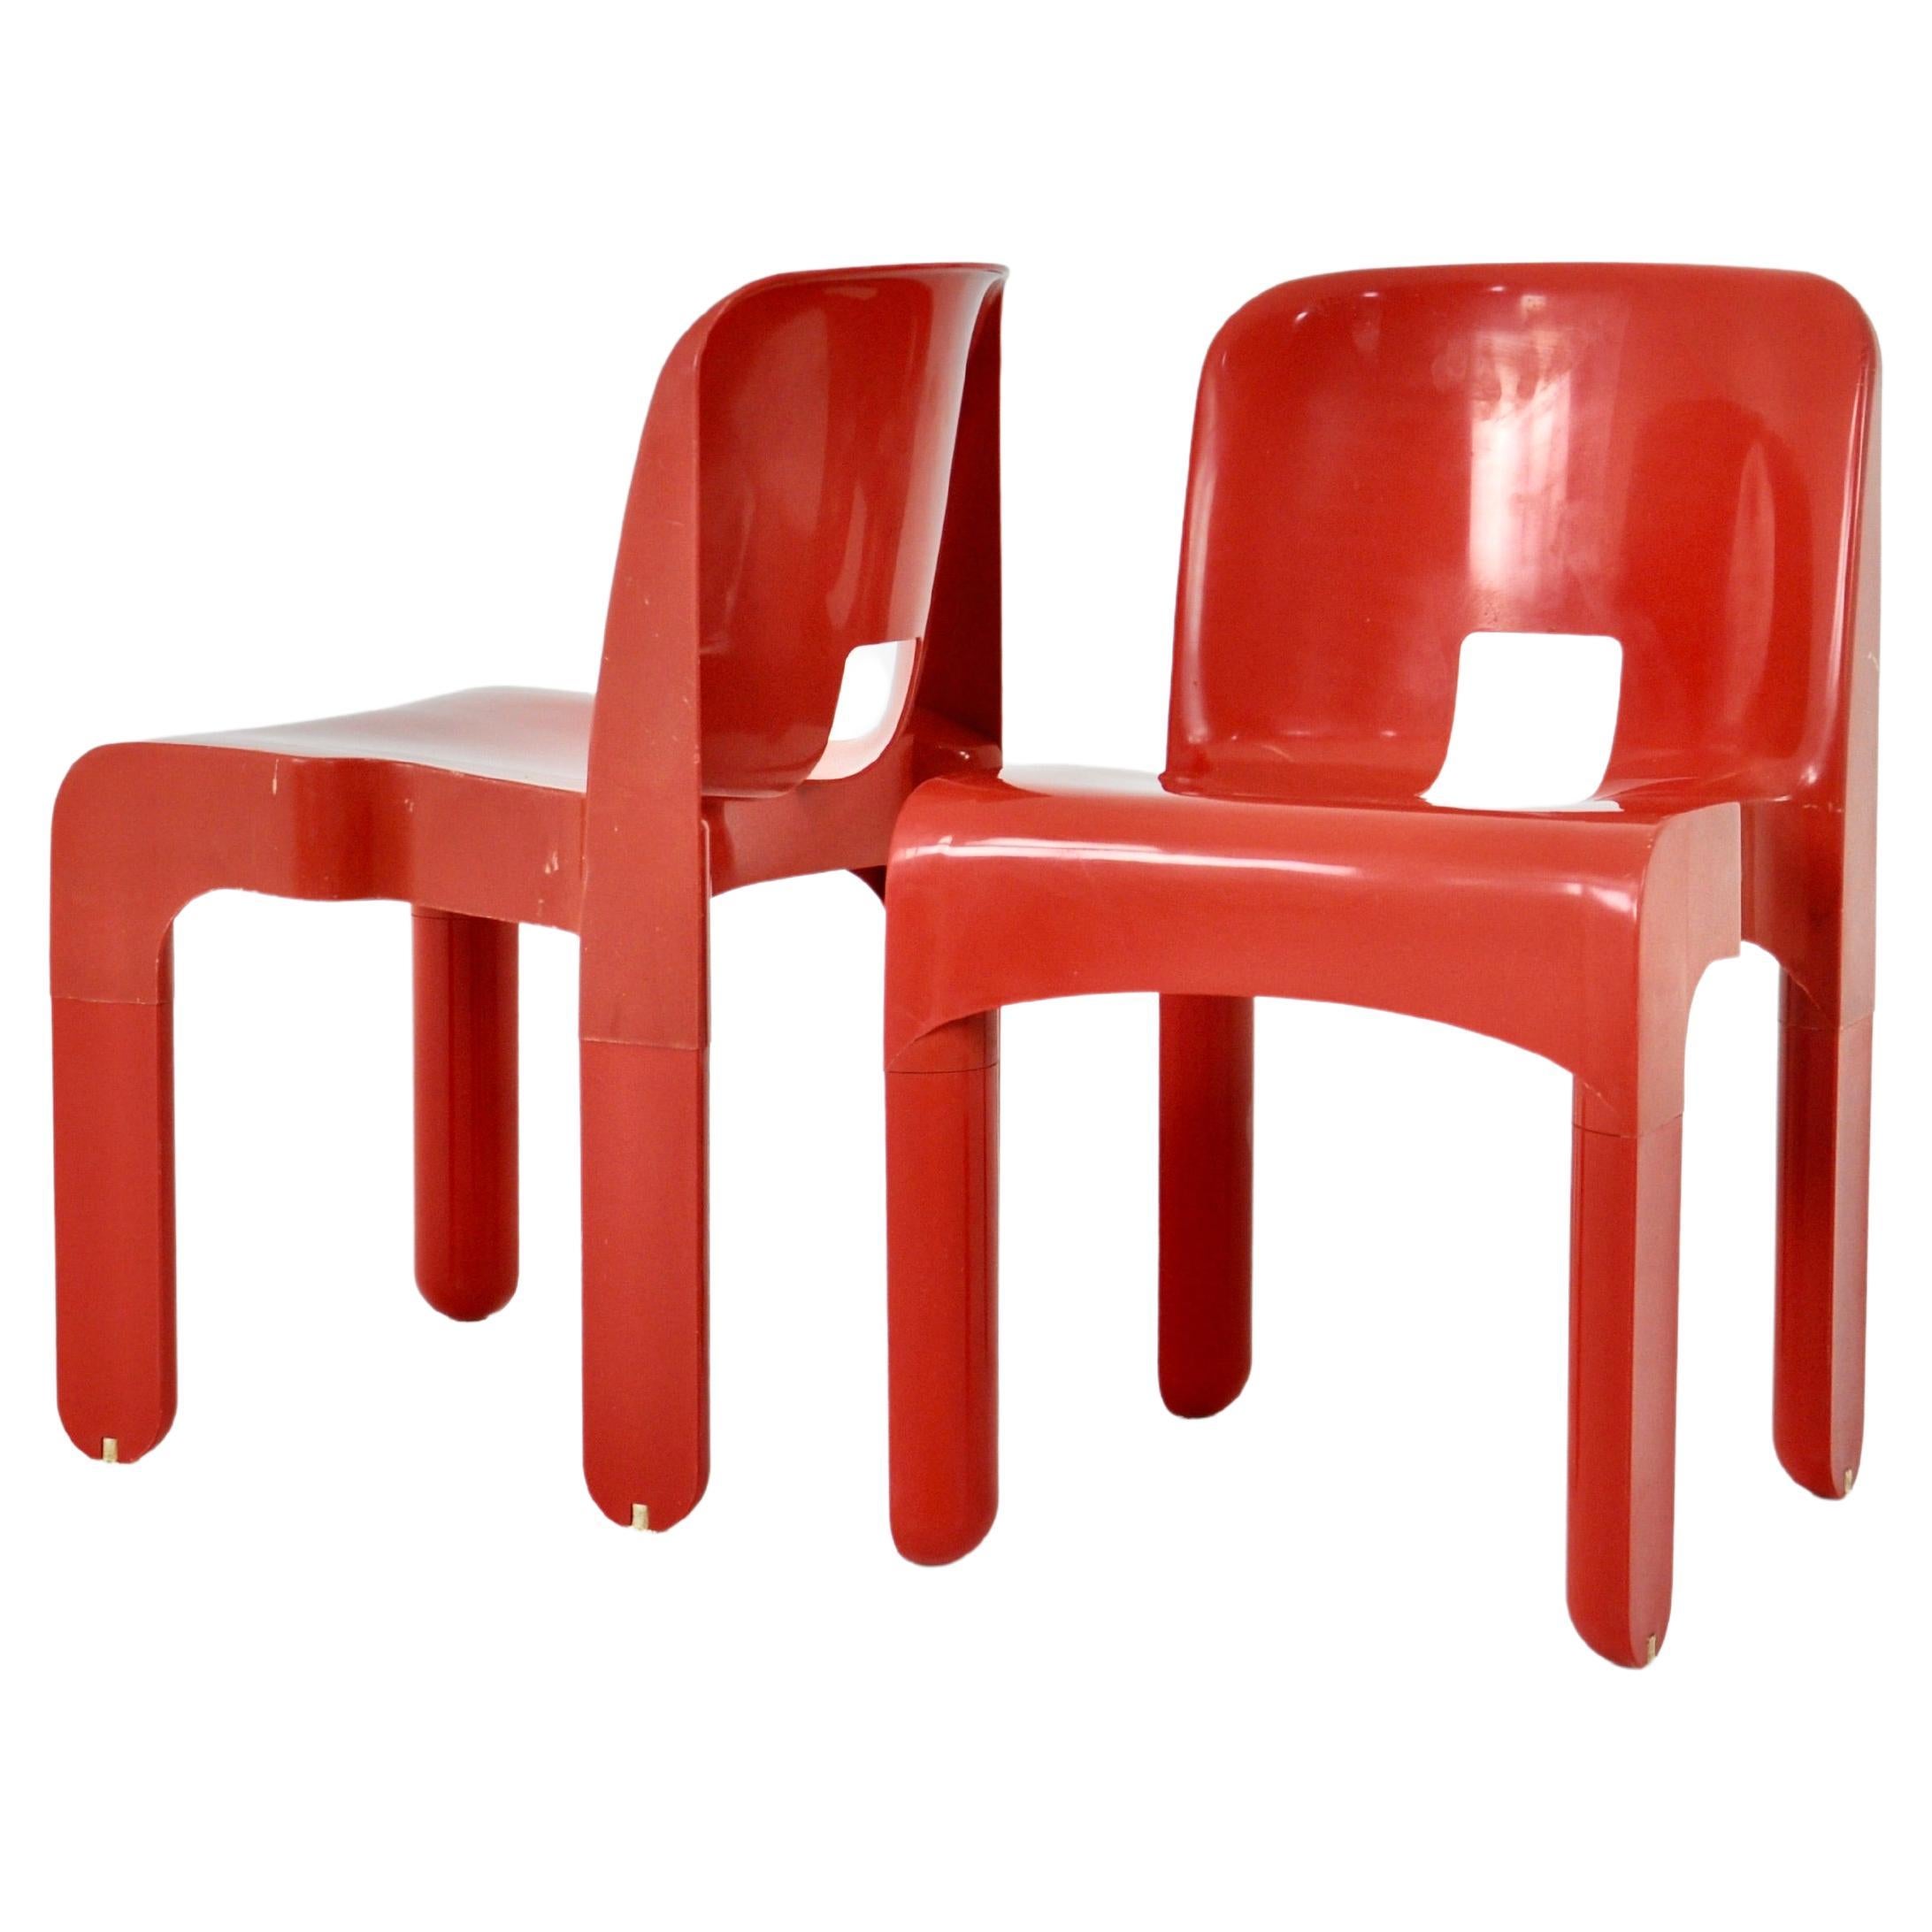 Modell 4867 Stühle von Joe Colombo für Kartell, 1970er Jahre, 2 Stück